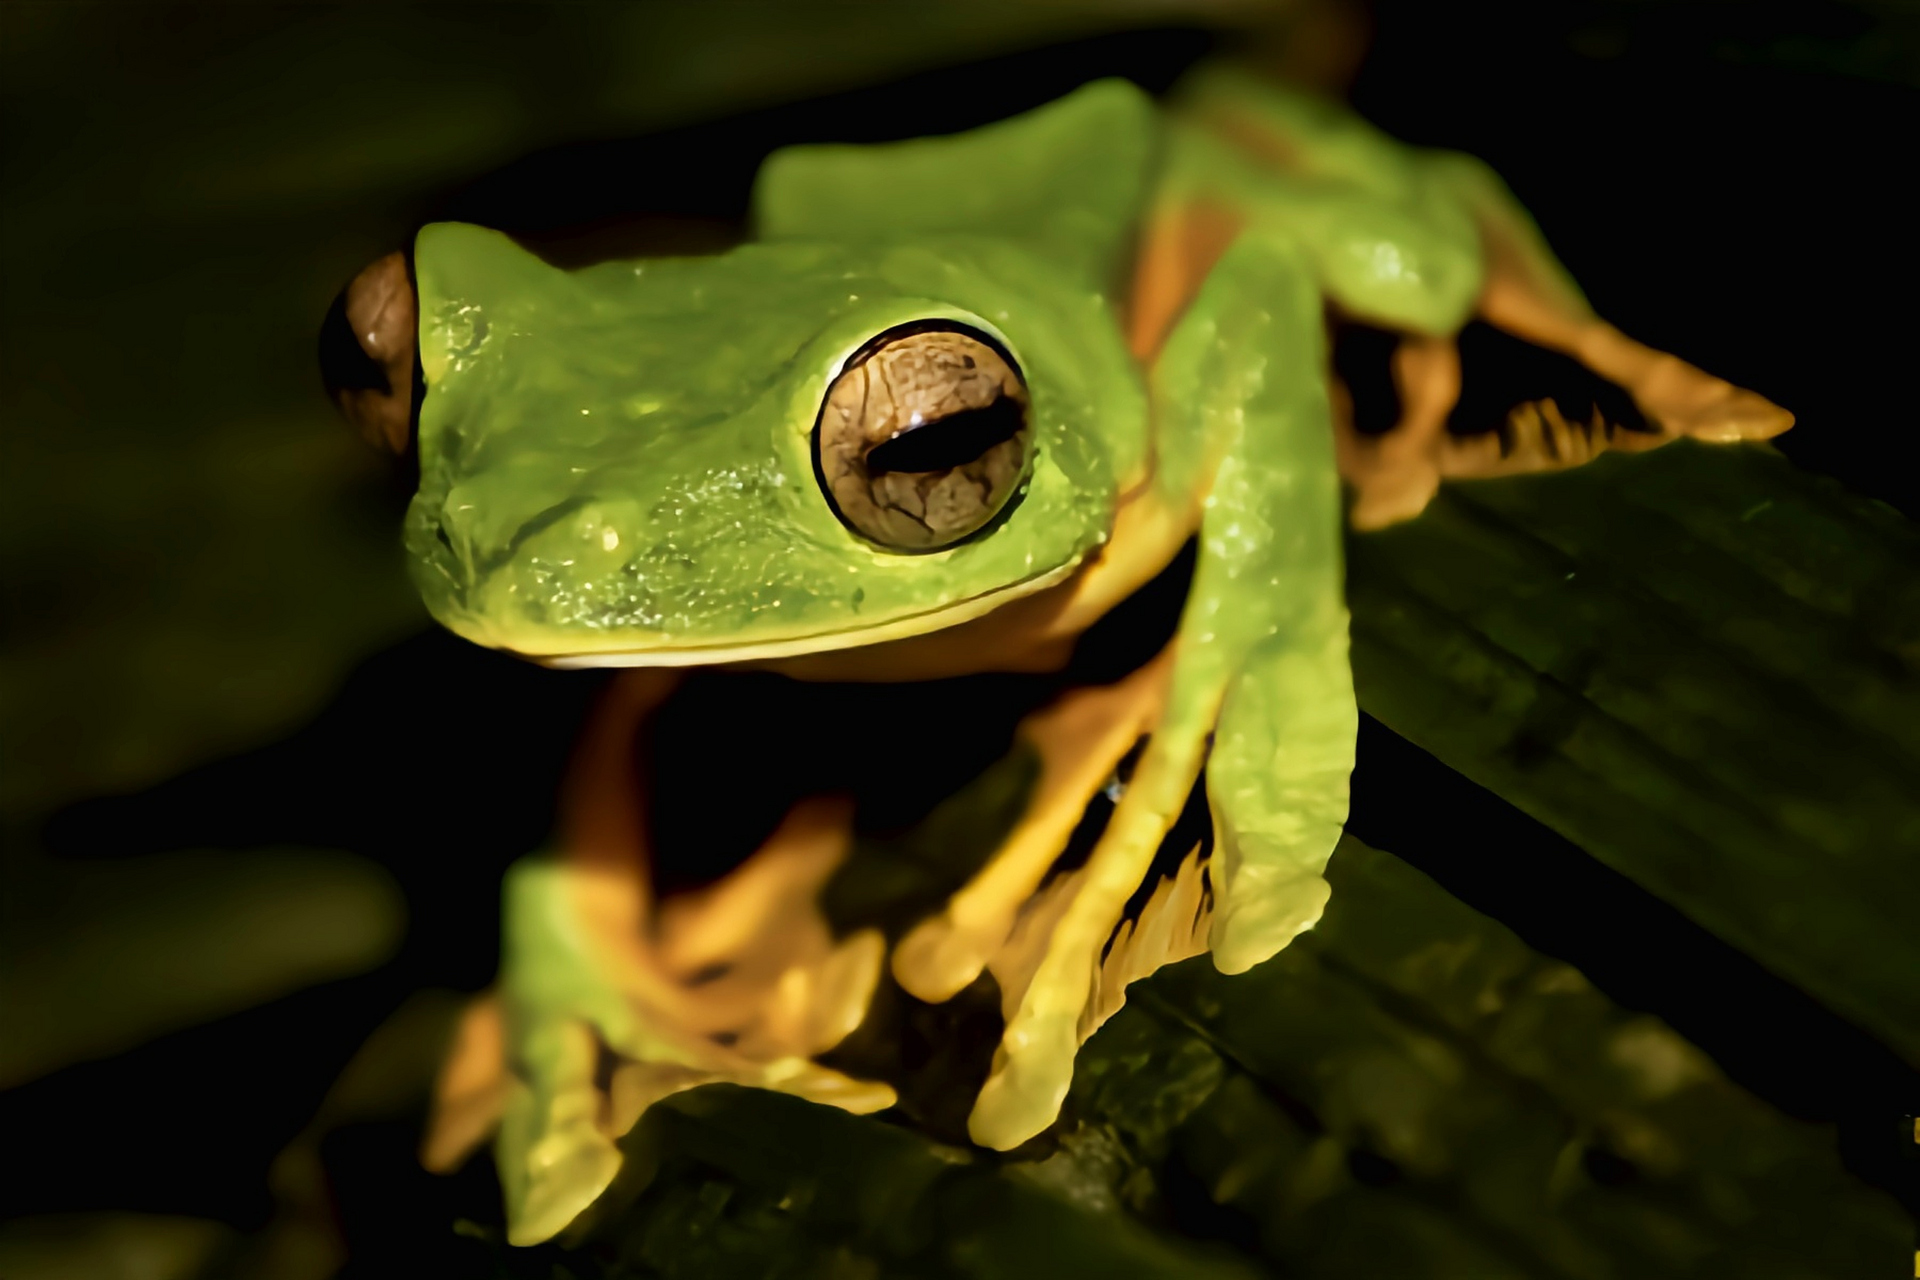 每天认识一种动物——华莱士飞蛙 华莱士飞蛙别名黑掌树蛙,原产于亚洲